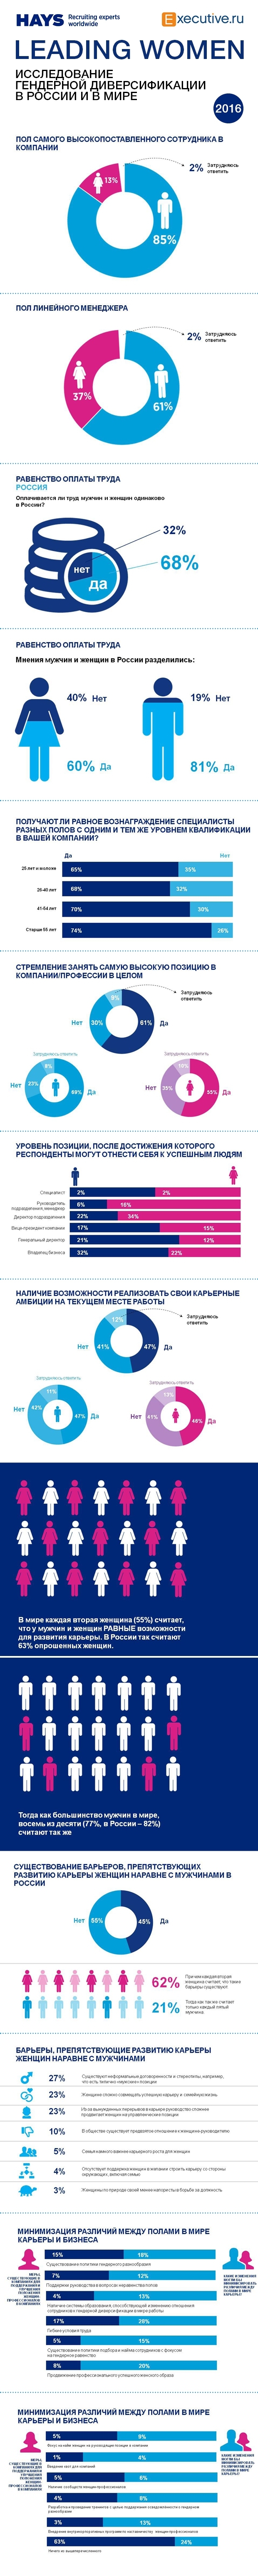 Бизнес-карьера мужчин и женщин в России и в мире